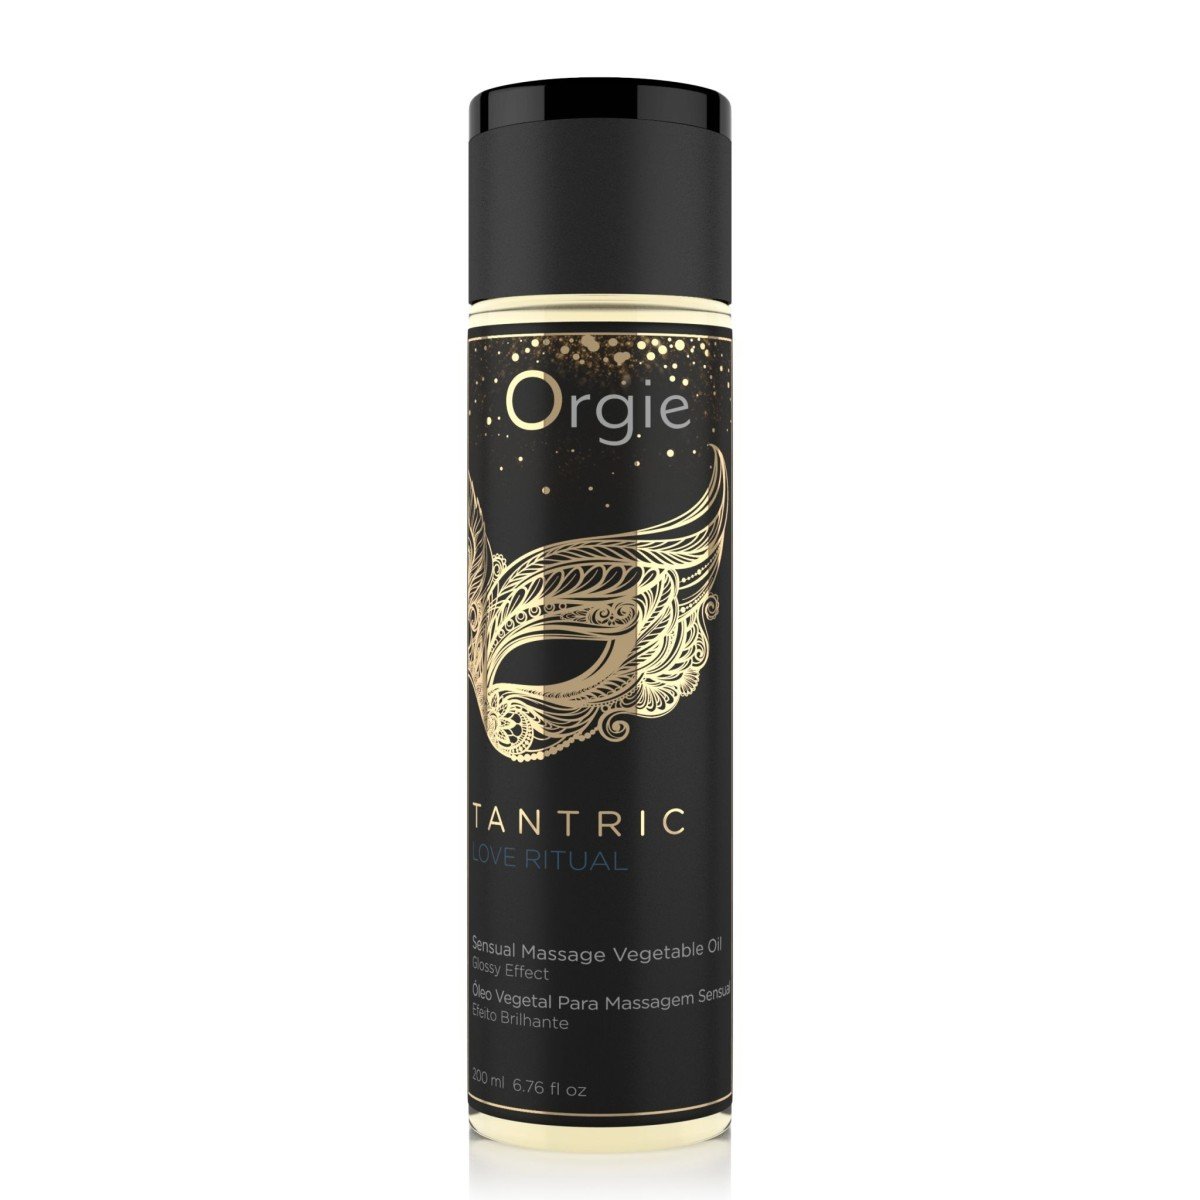 Orgie Tantric Love Ritual 200 ml, erotický masážní olej